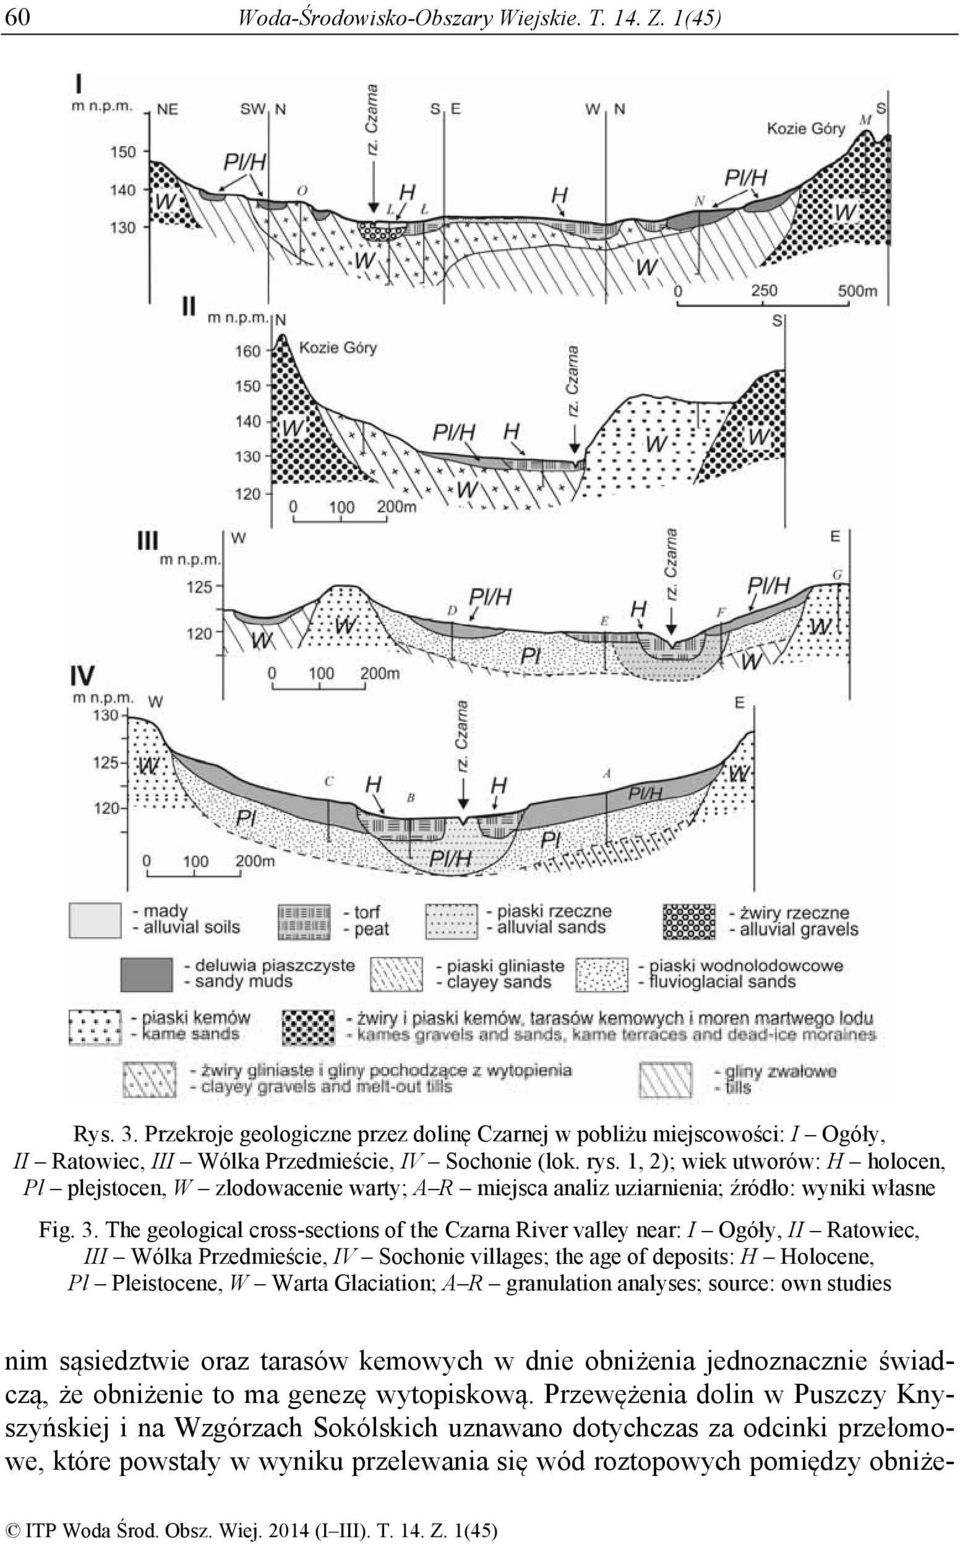 The geological cross-sections of the Czarna River valley near: I Ogóły, II Ratowiec, III Wólka Przedmieście, IV Sochonie villages; the age of deposits: H Holocene, Pl Pleistocene, W Warta Glaciation;